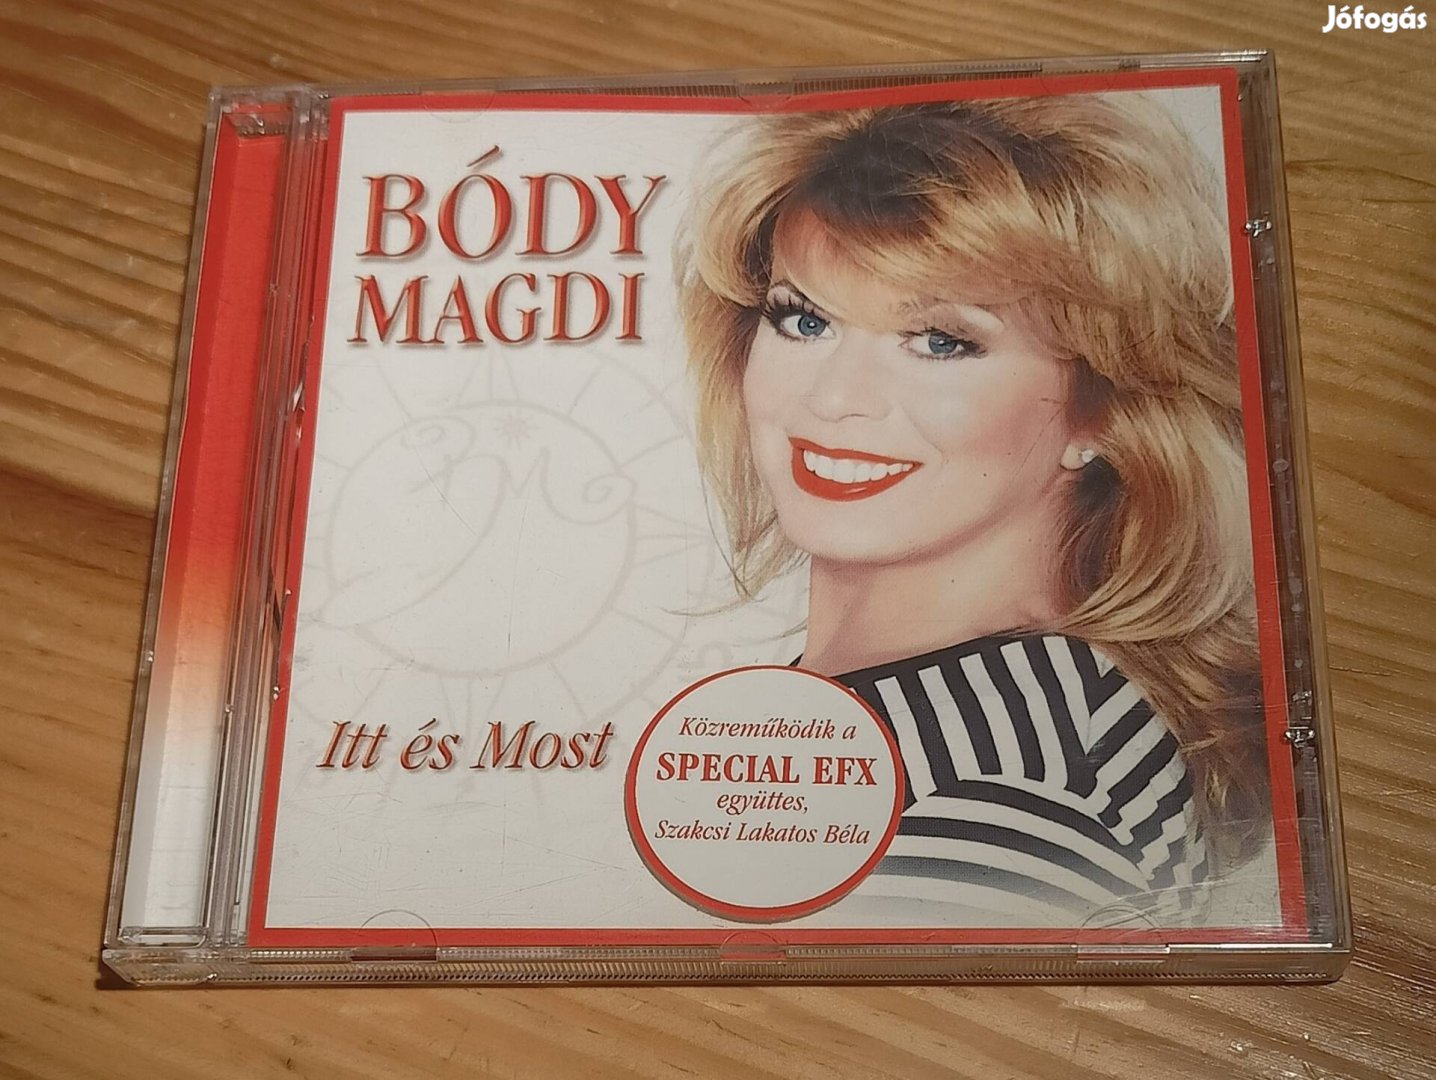 Bódy Magdi - ITT És Most CD